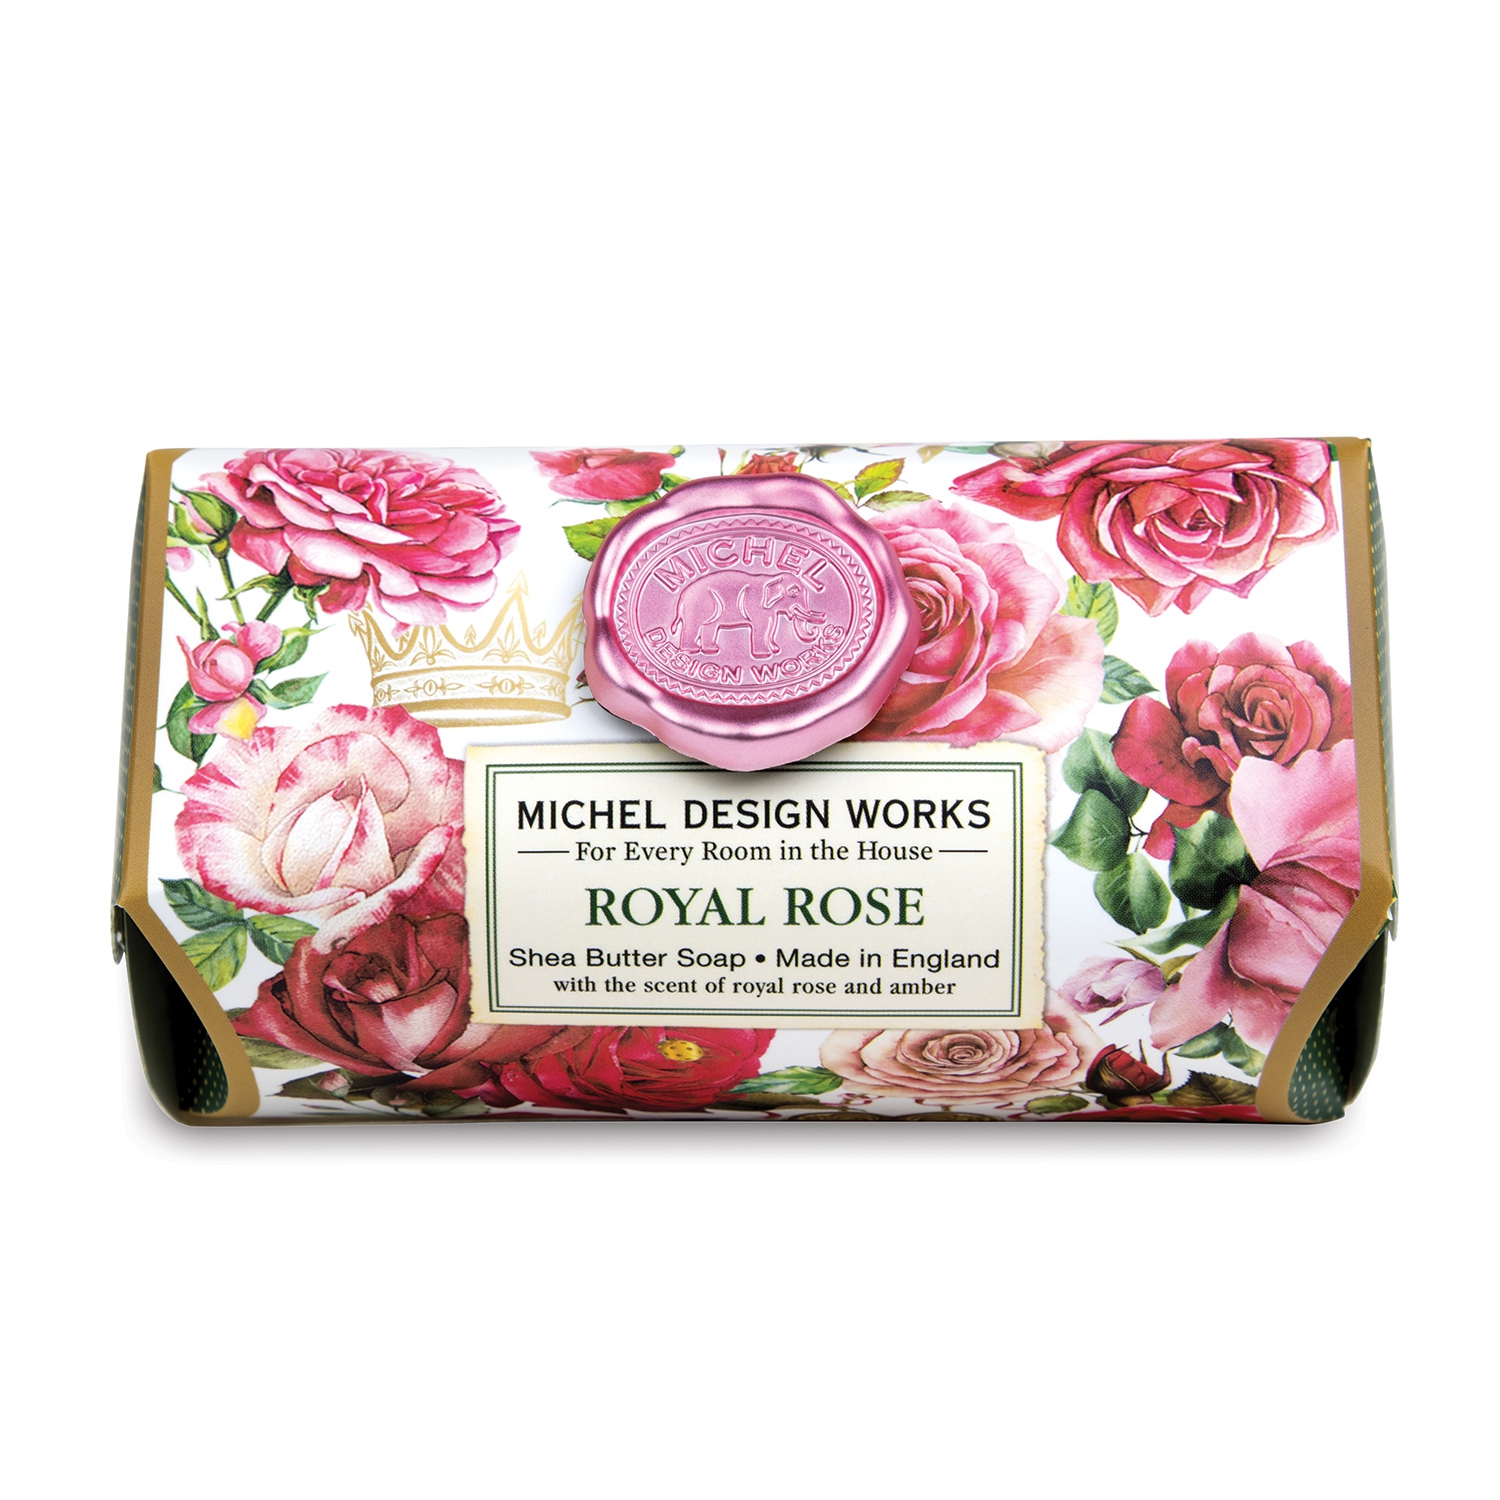 Royal Rose Large Soap Bar 246g Michel Design